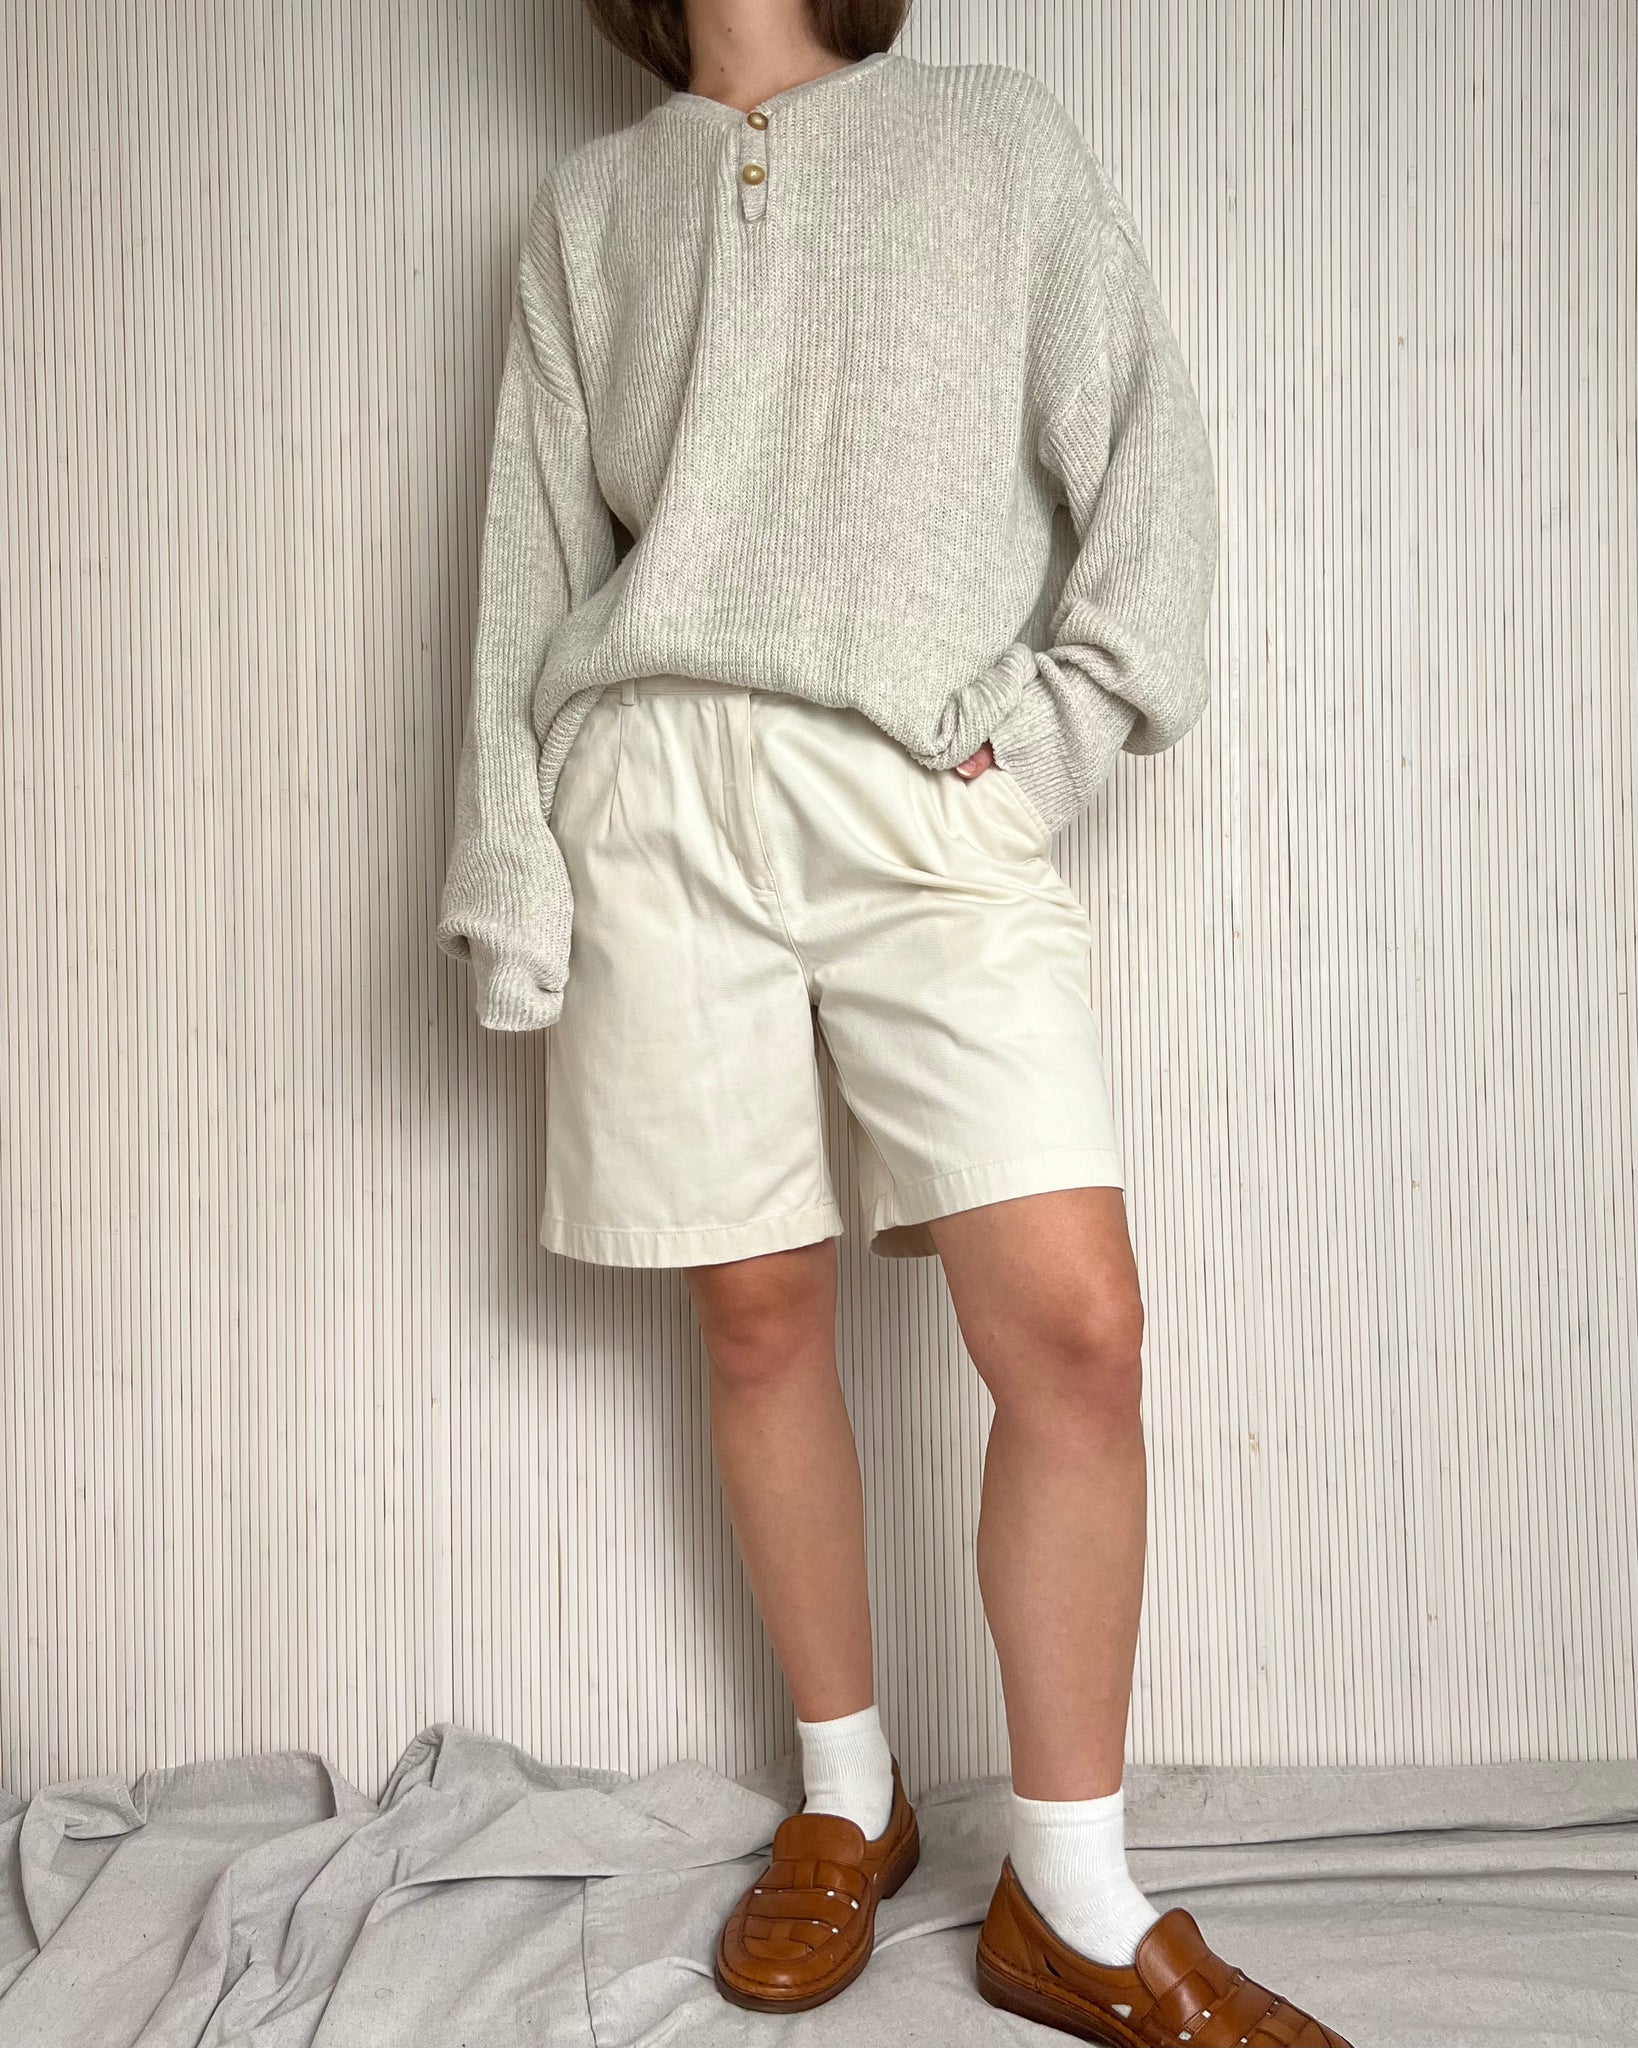 90s Light Khaki Shorts (Fits M)